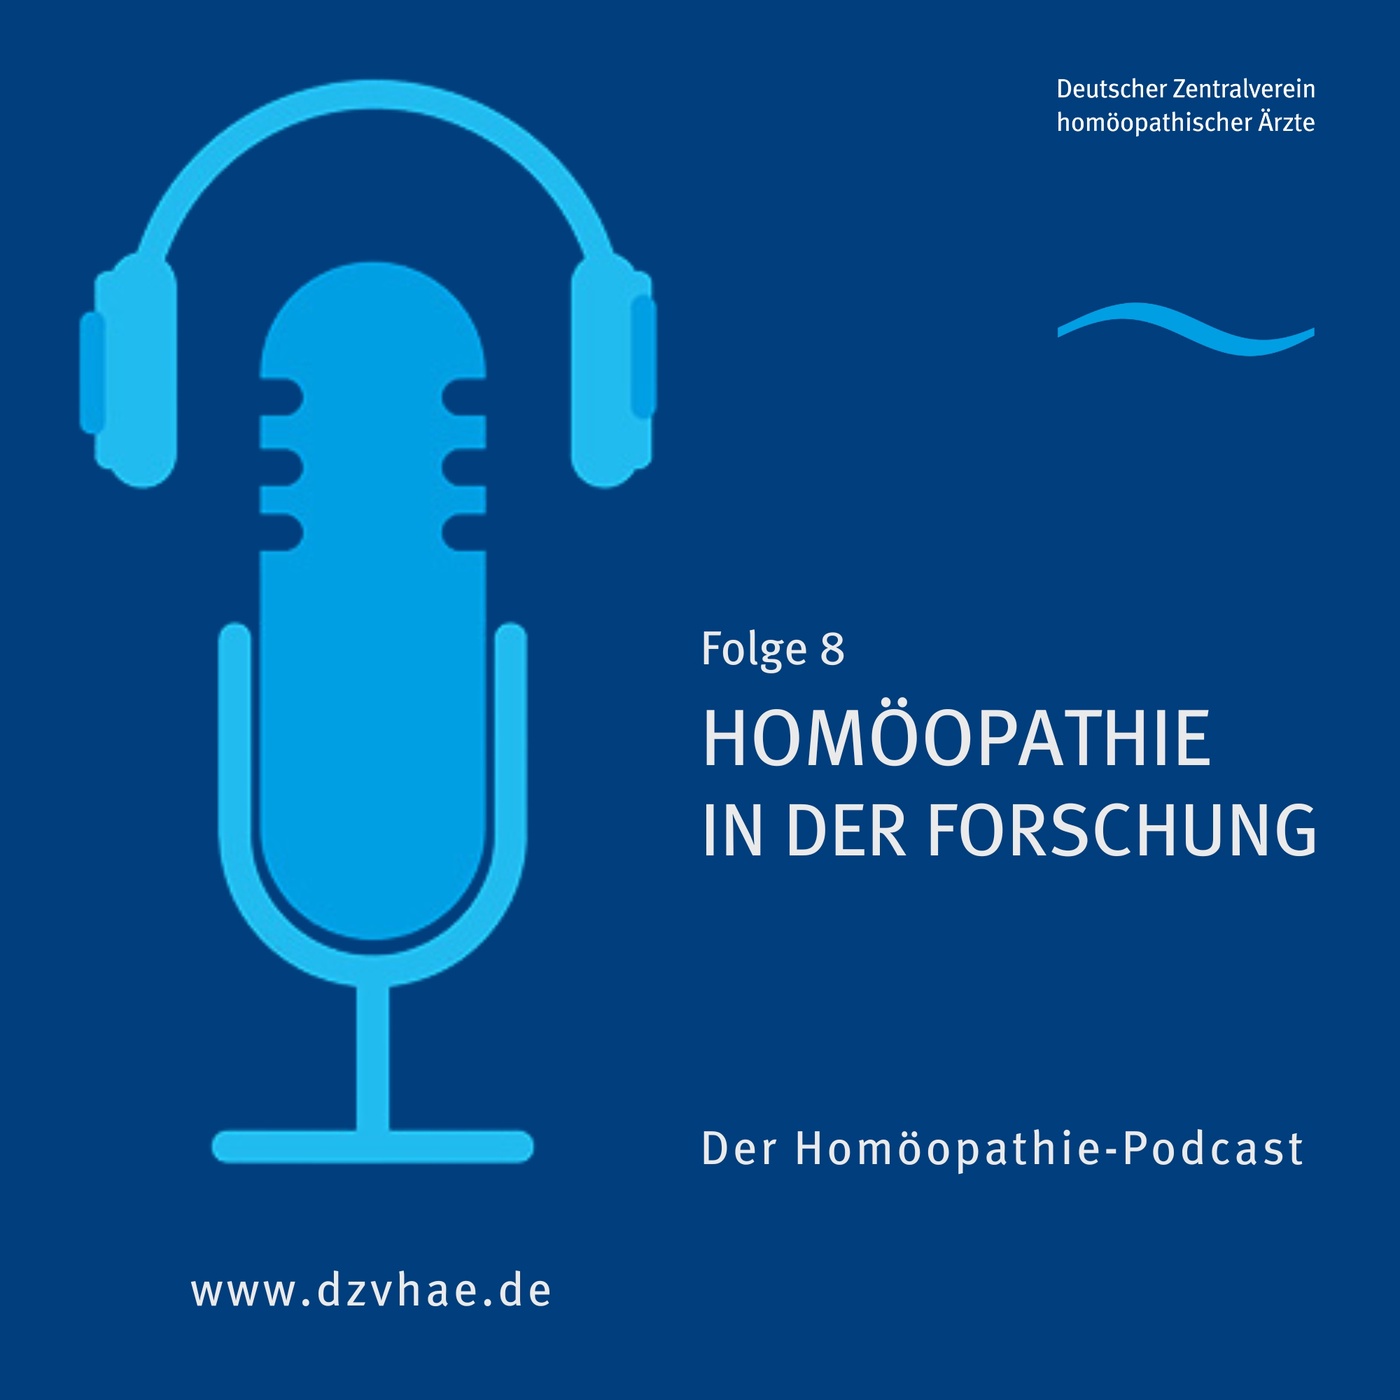 Homöopathie in der Forschung